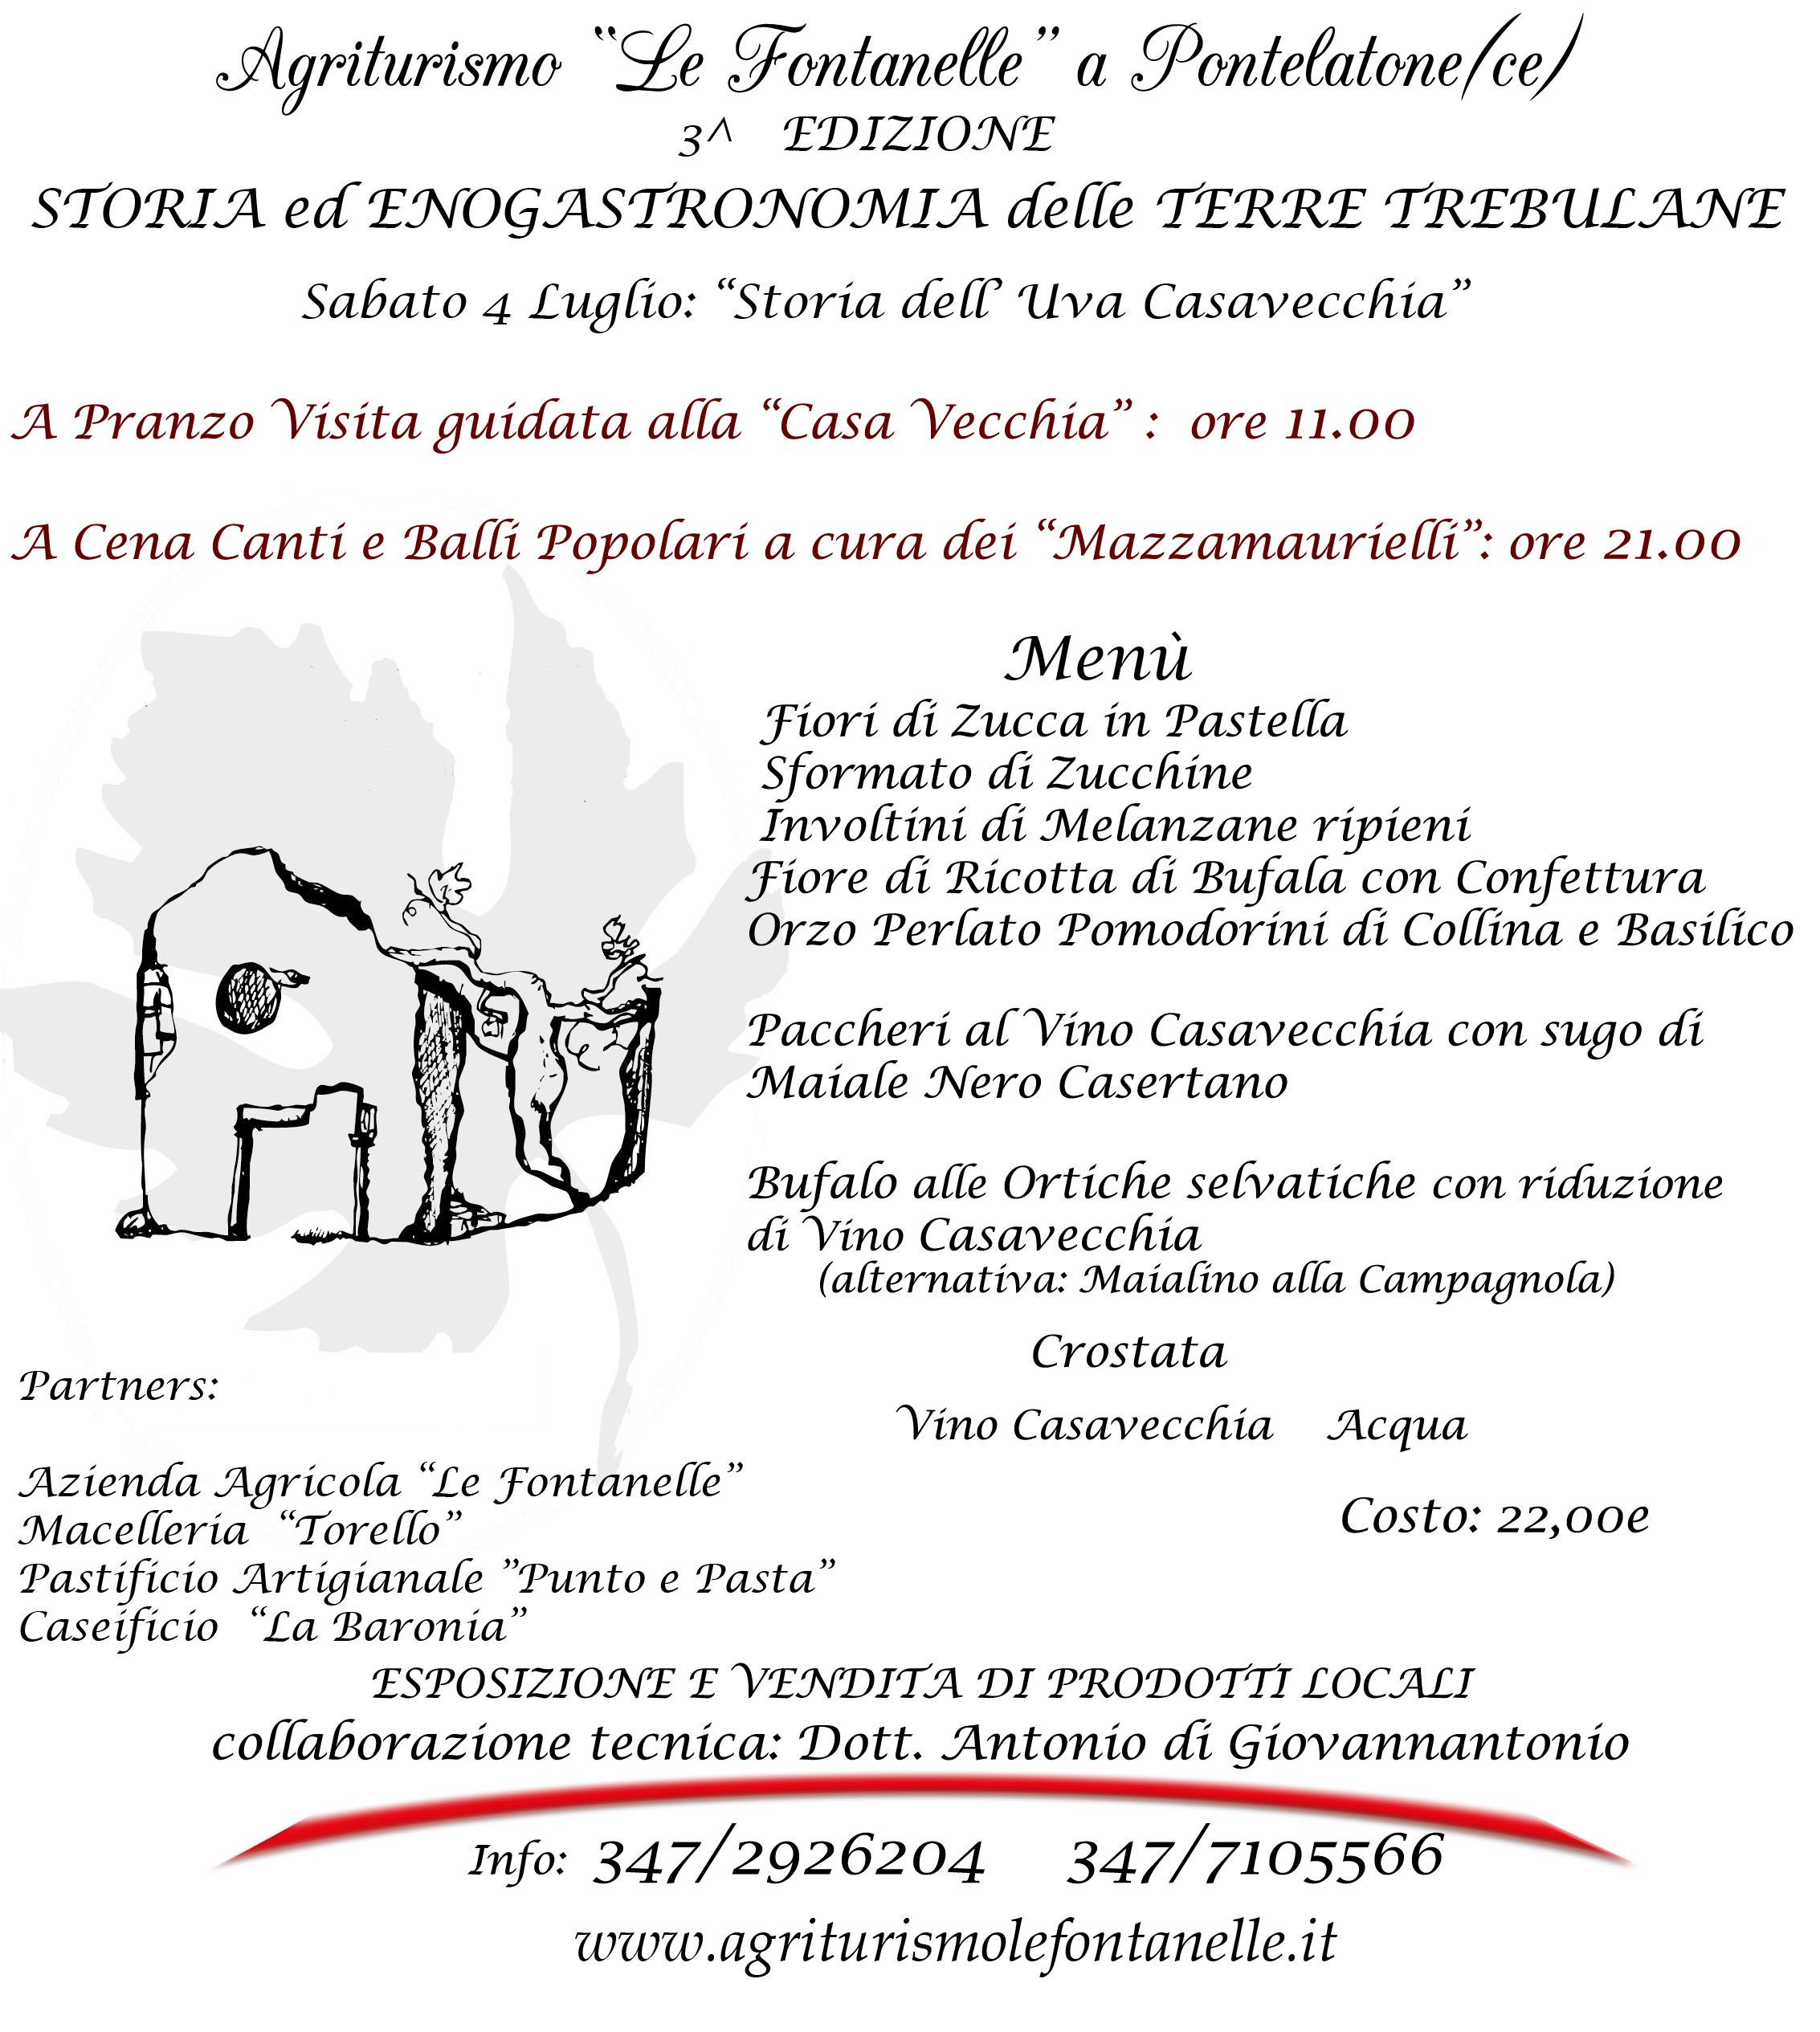 http://www.clarusonline.it/wp-content/uploads/2015/06/Storia-ed-enogastrononomia-delle-terre-trebulane.jpg